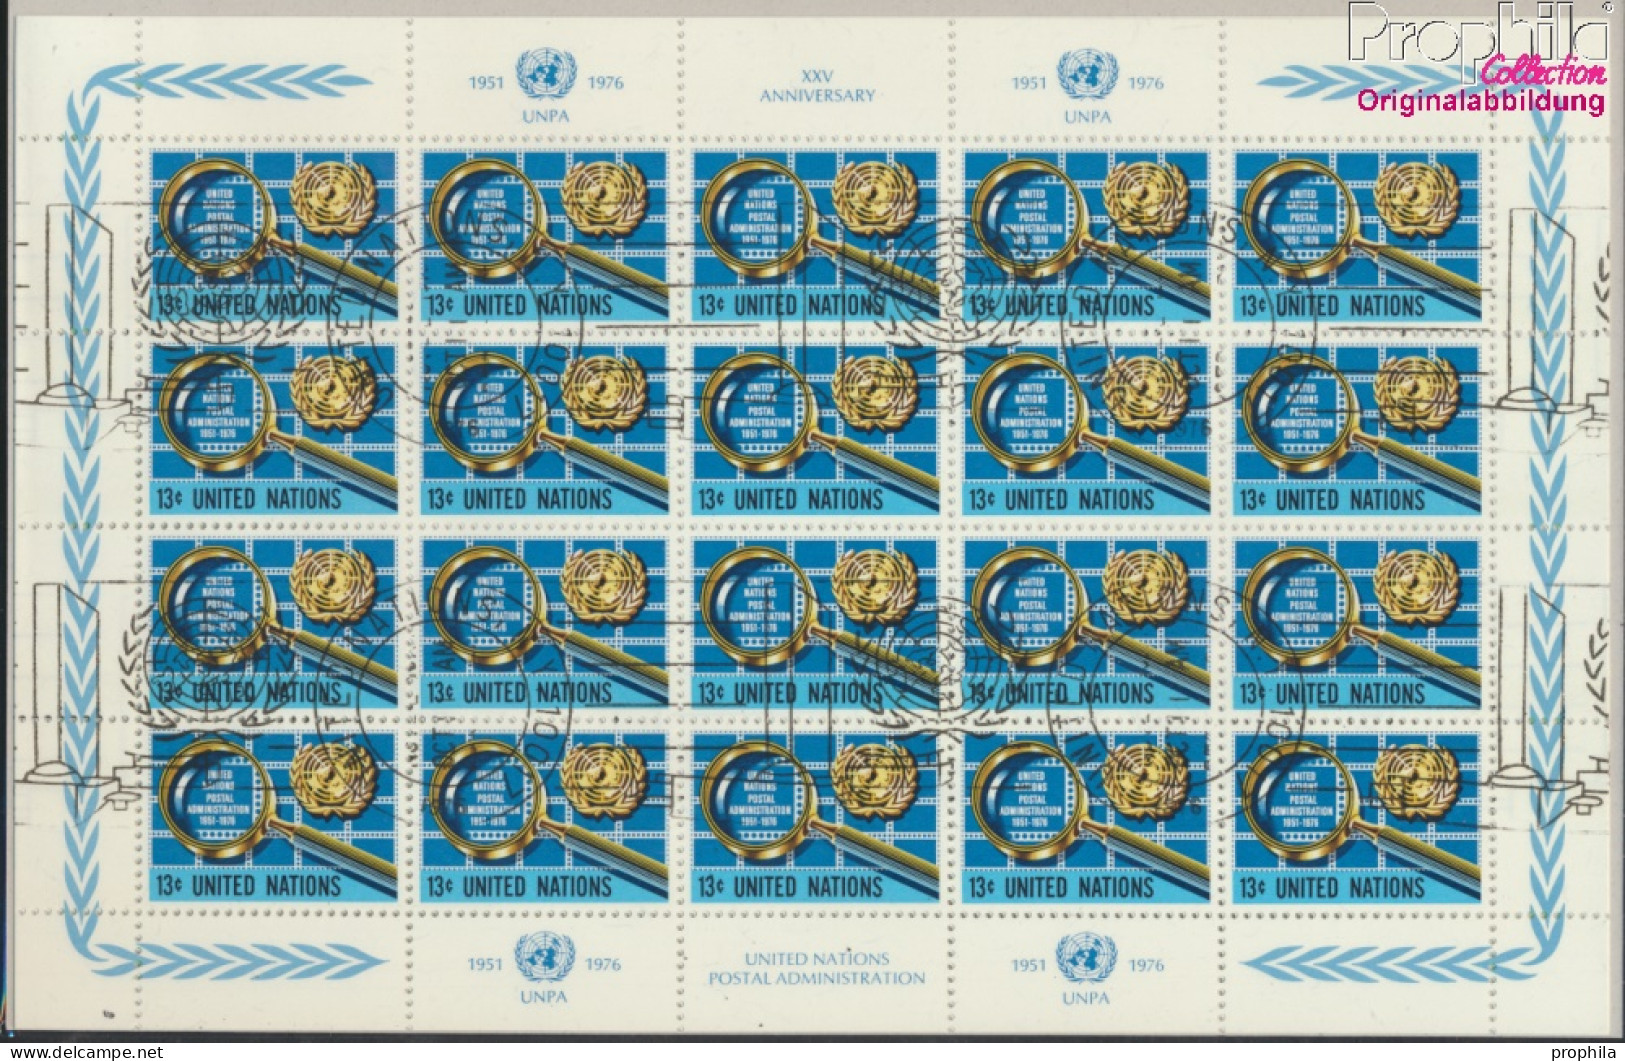 UNO - New York 299Klb-300Klb Kleinbogen (kompl.Ausg.) Gestempelt 1976 Postverwaltung (10050723 - Oblitérés